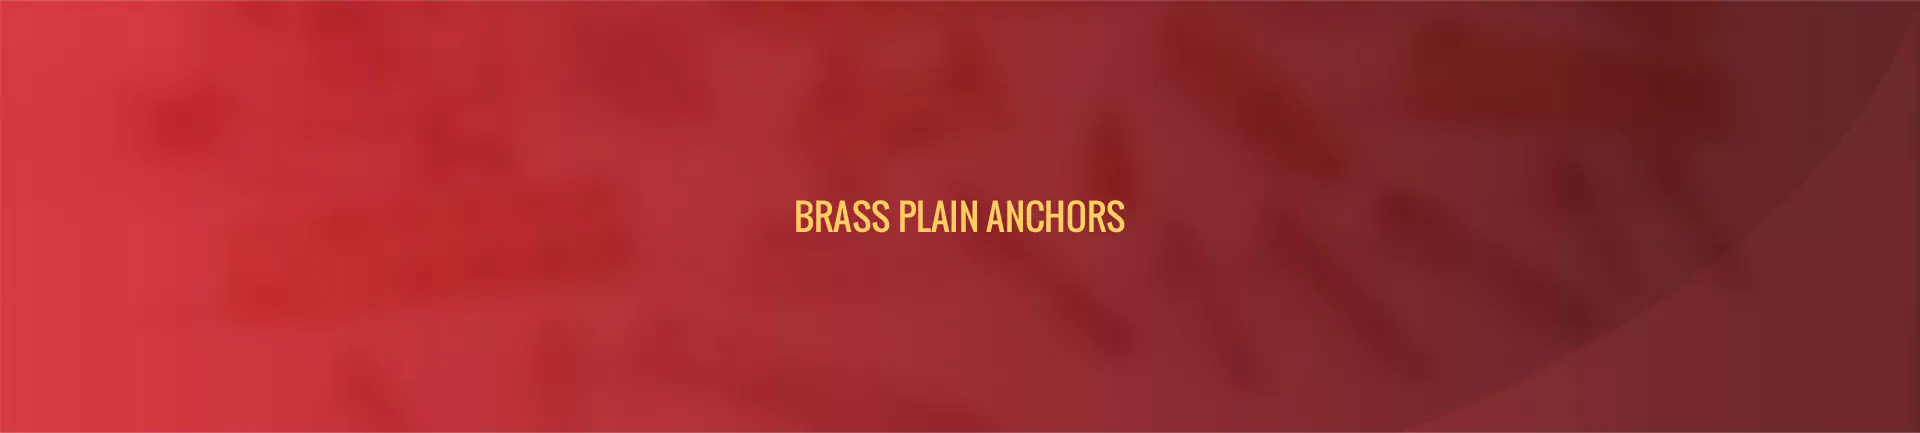 brass-plain-anchors-banner